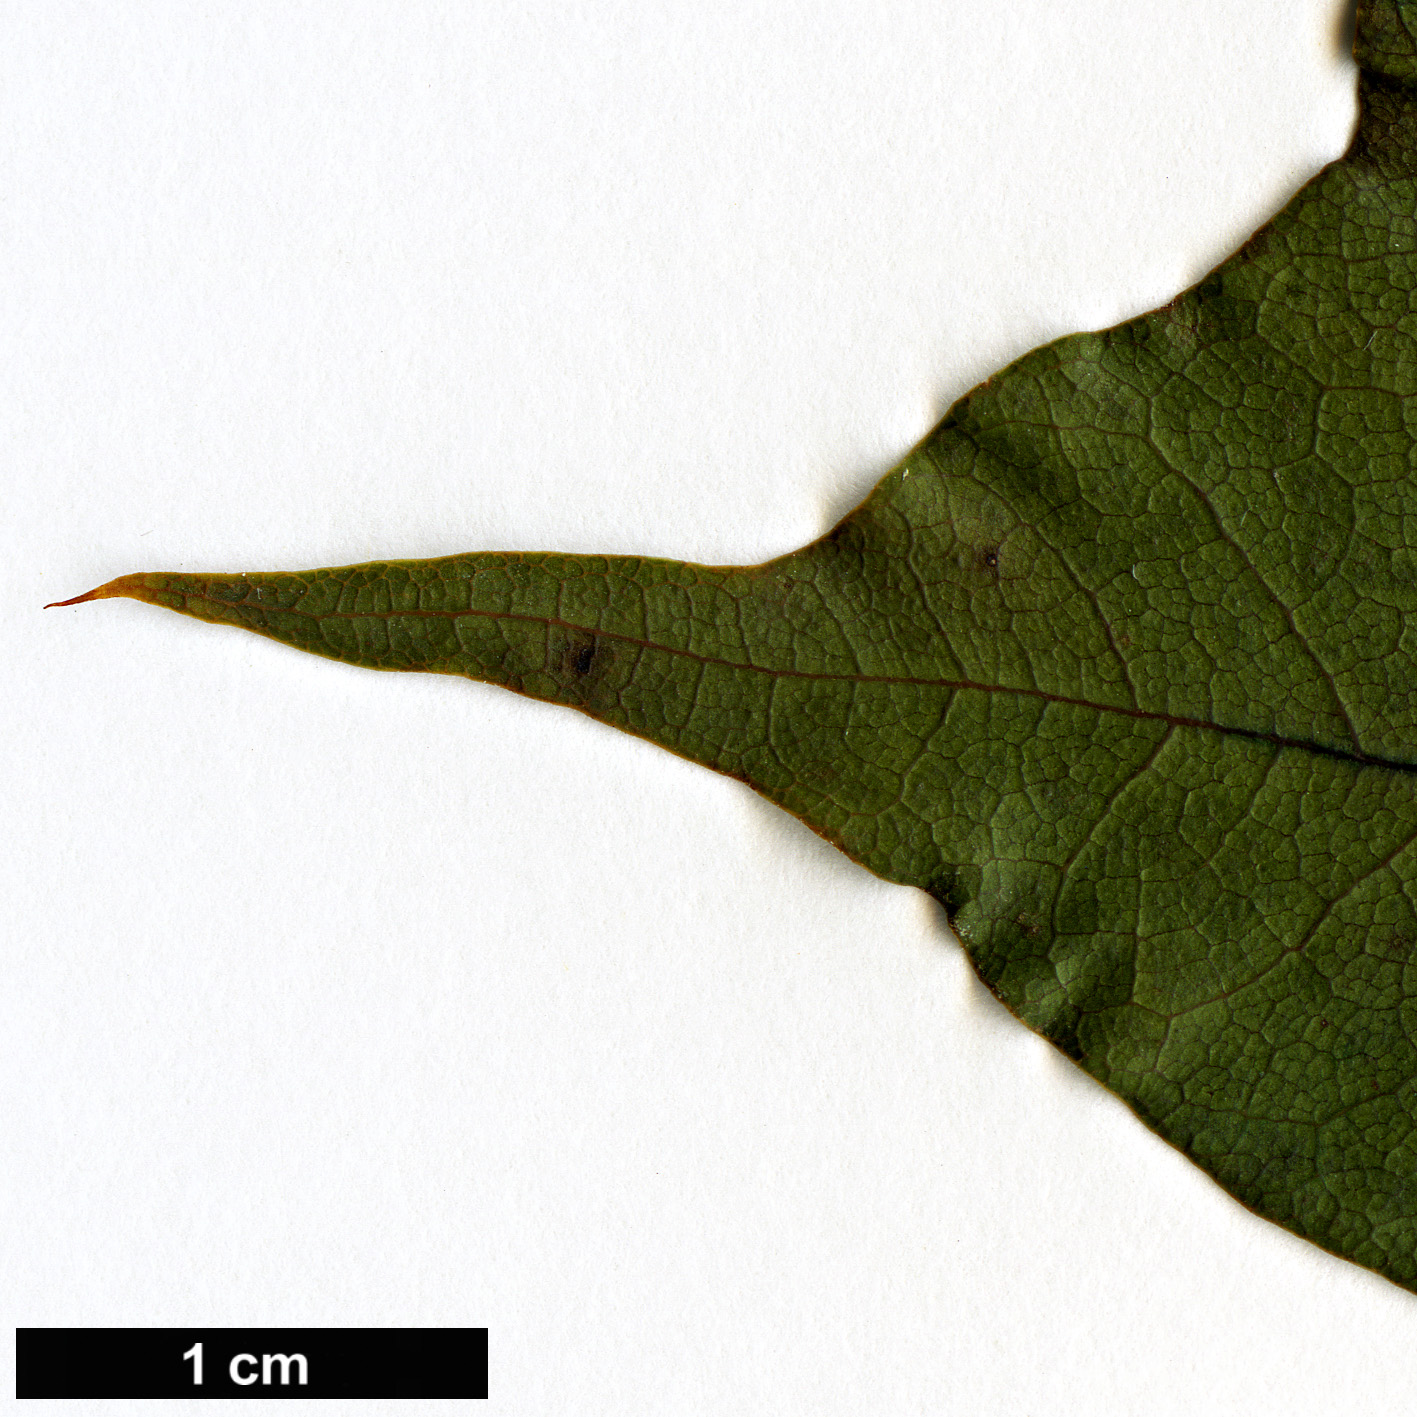 High resolution image: Family: Sapindaceae - Genus: Acer - Taxon: pictum - SpeciesSub: subsp. mono